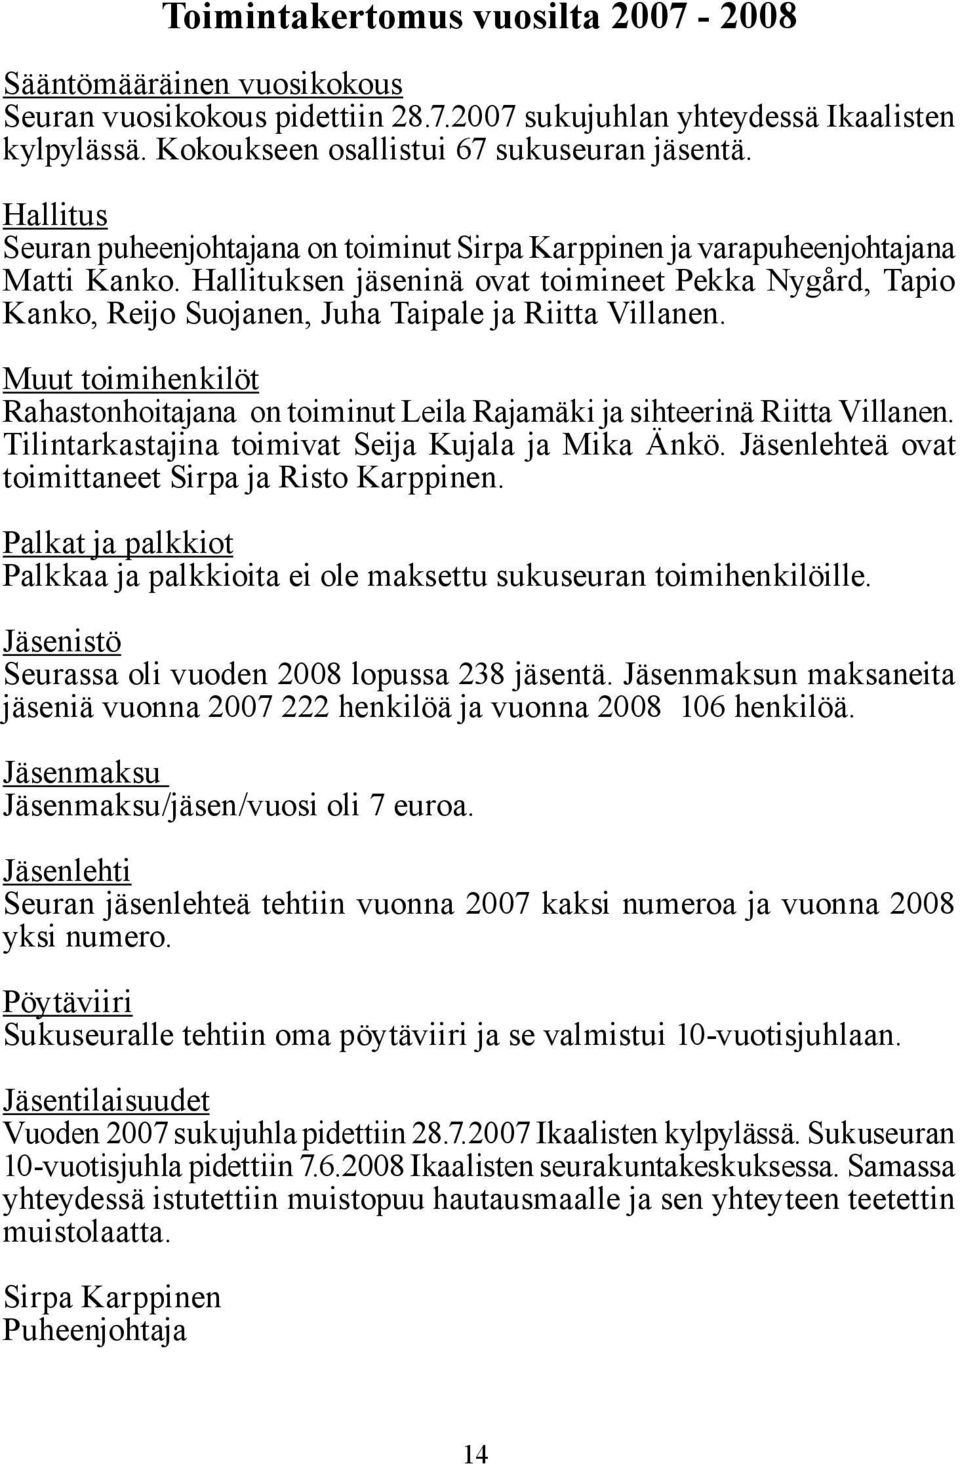 Hallituksen jäseninä ovat toimineet Pekka Nygård, Tapio Kanko, Reijo Suojanen, Juha Taipale ja Riitta Villanen.